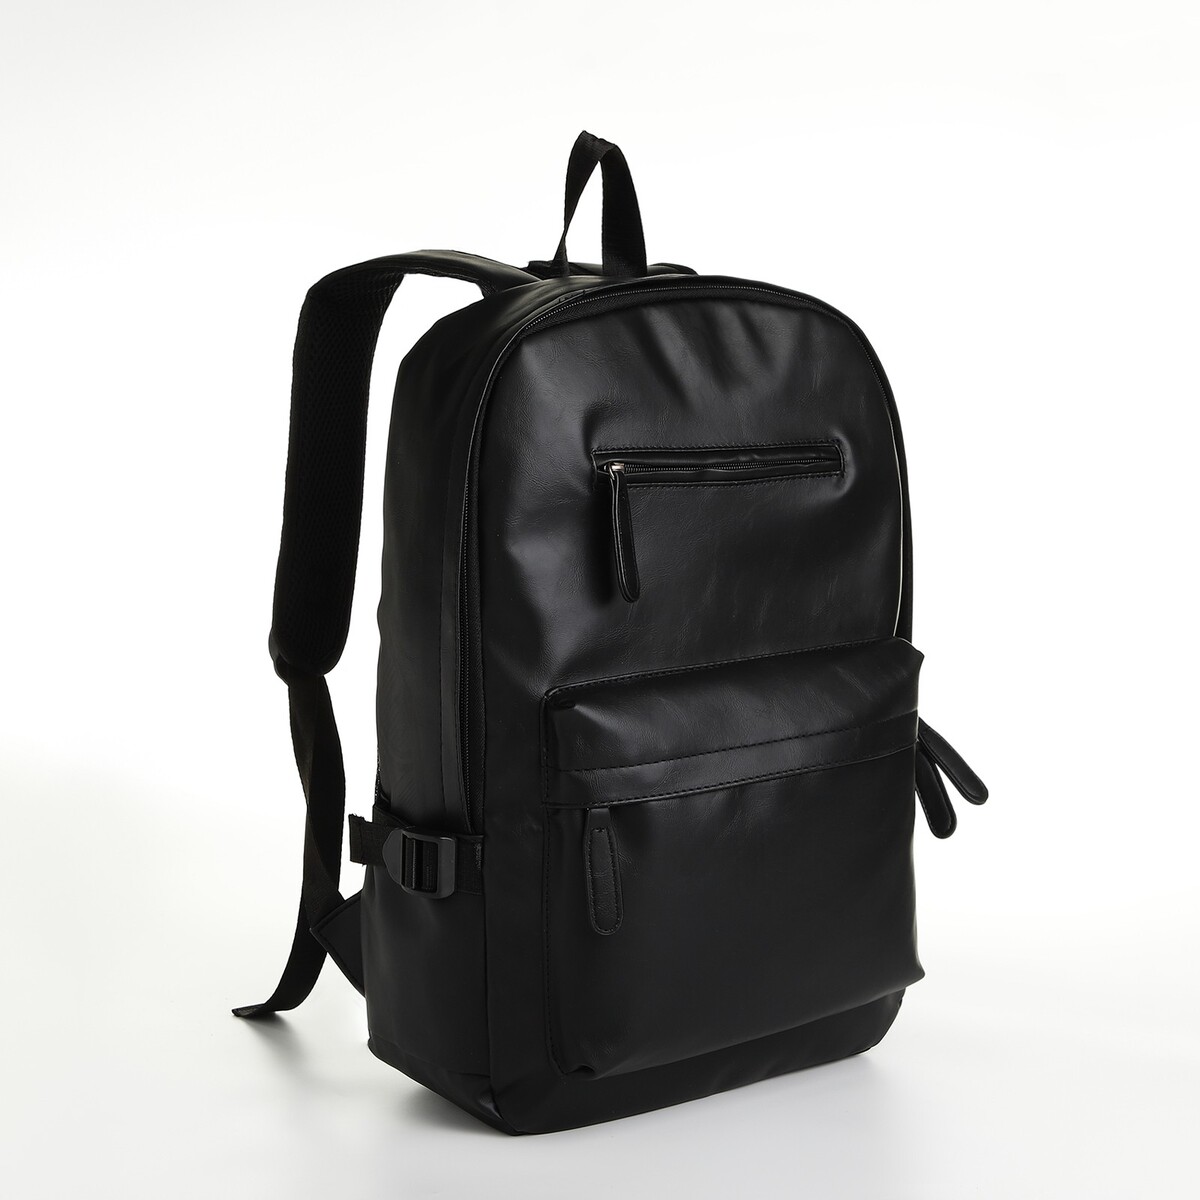 Рюкзак городской из искусственной кожи на молнии, 4 кармана, цвет черный рюкзак городской из текстиля на молнии 4 кармана